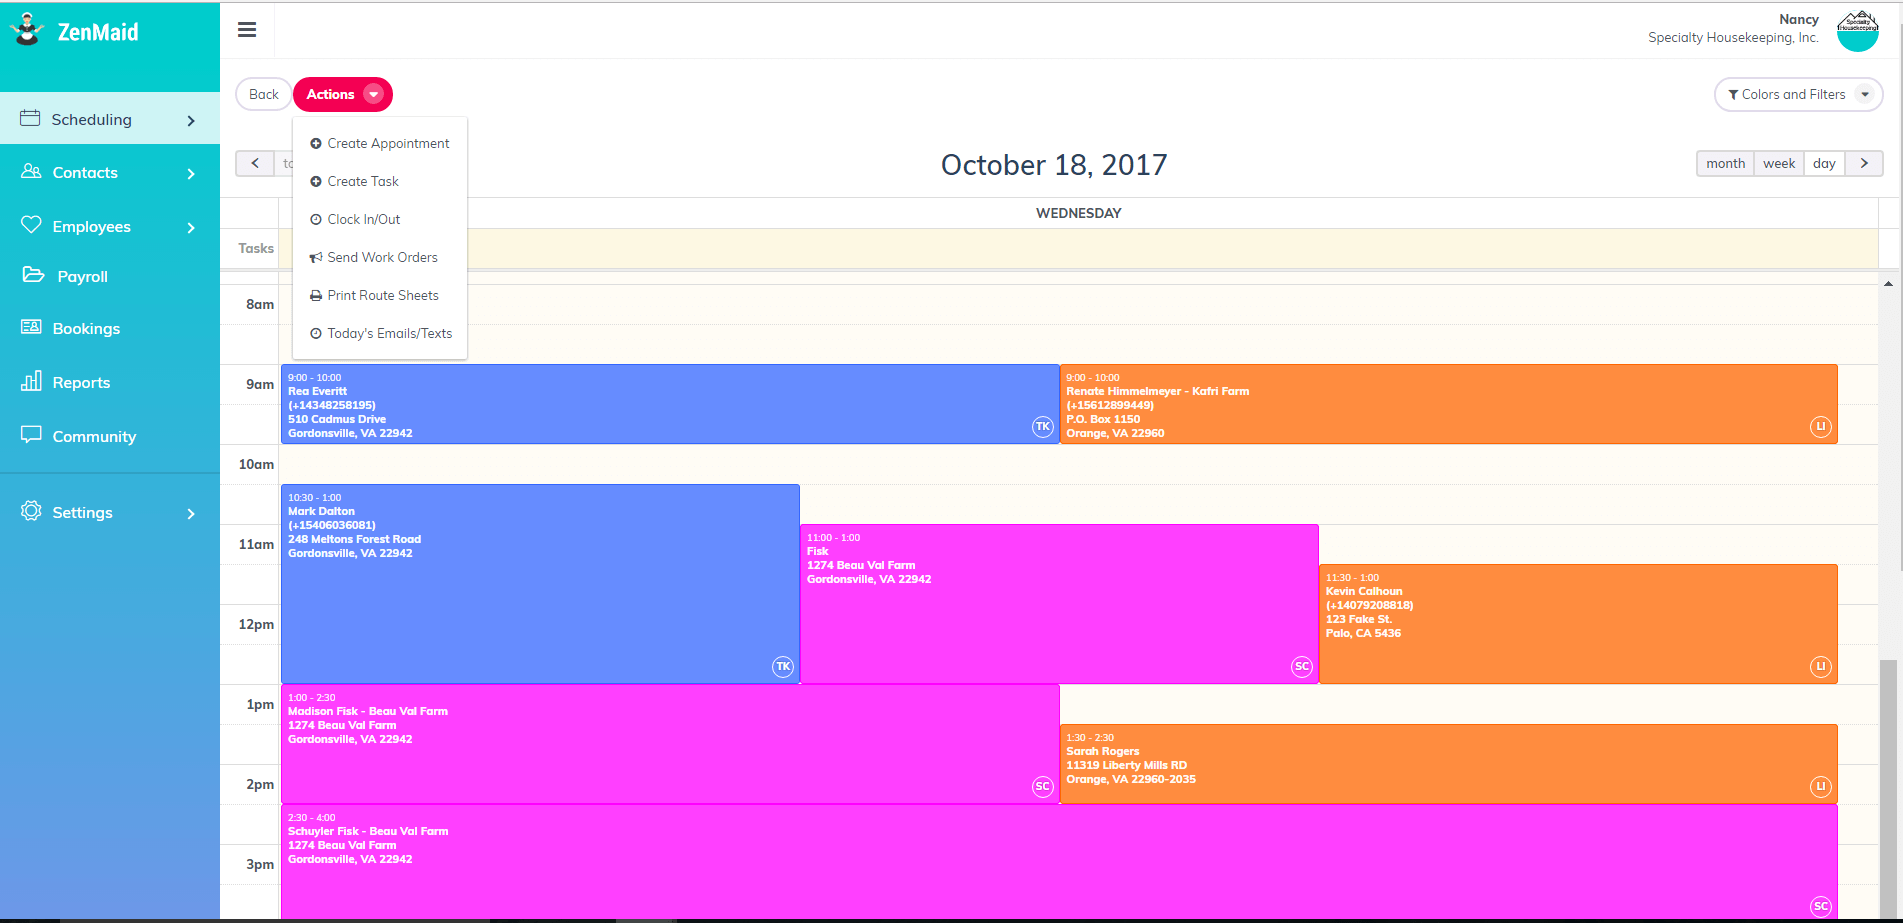 Scheduling in ZenMaid